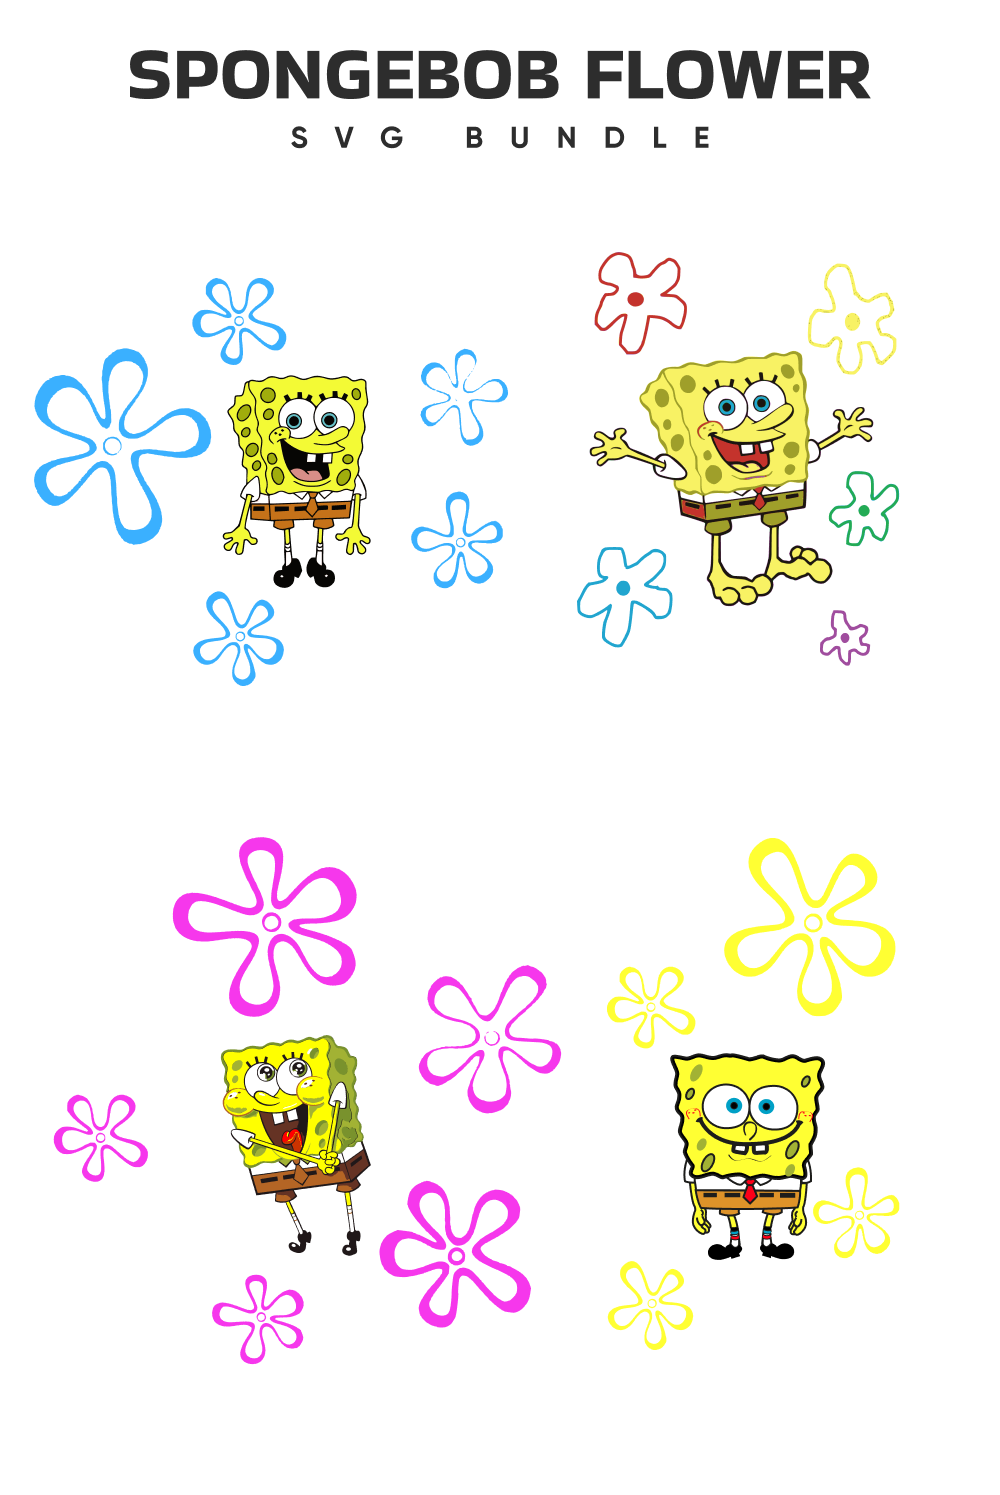 Hippie Sponge Bob with flowers.